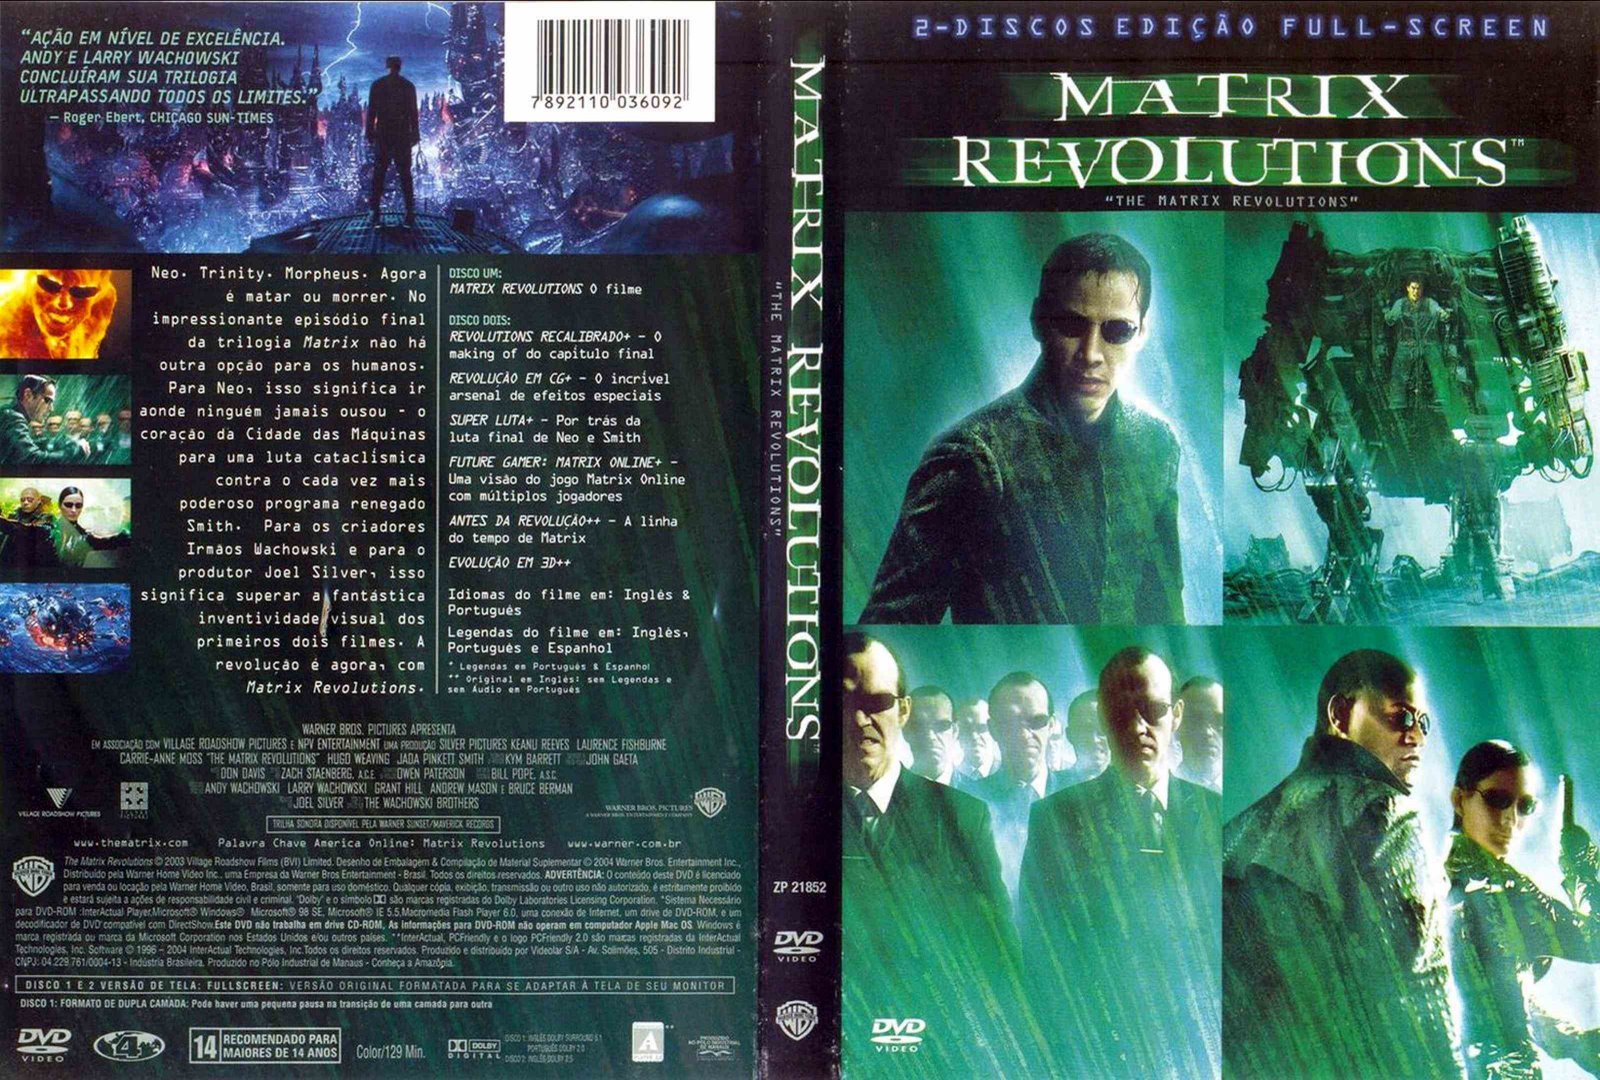 http://2.bp.blogspot.com/_pnOdTUC4iSY/TDR85bzWPqI/AAAAAAAAAIk/IyZwbsuWvoc/s1600/Matrix_Revolutions.jpg